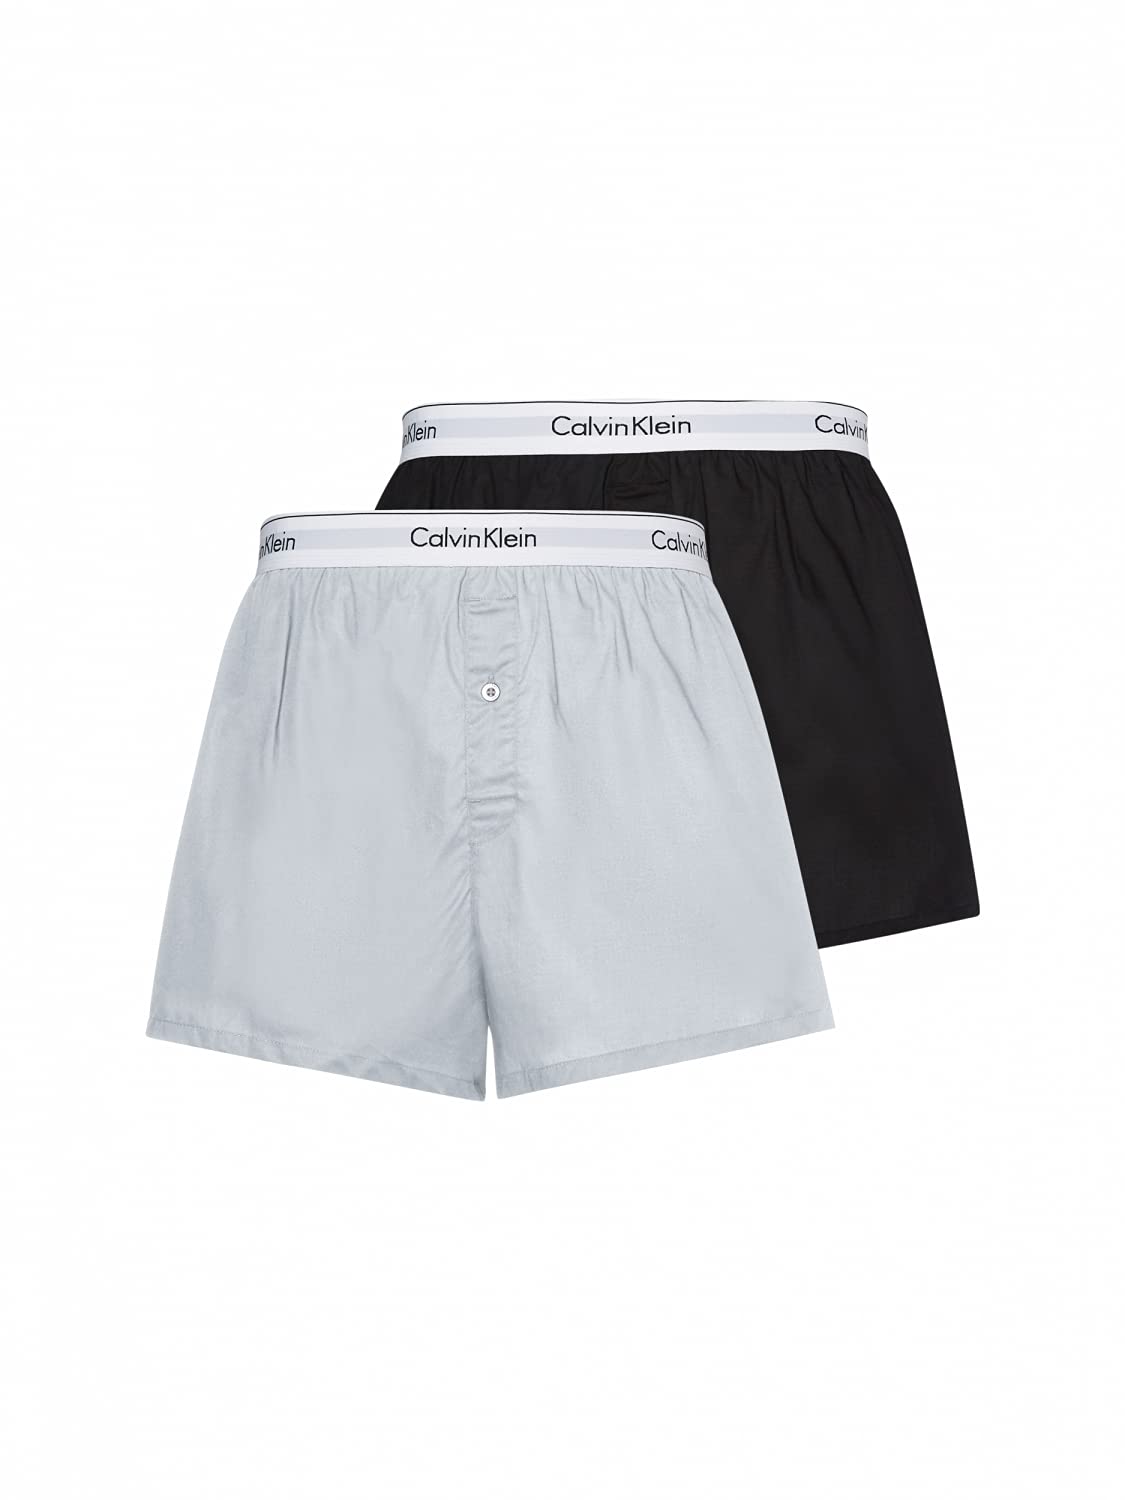 Calvin Klein Herren 2er Pack Boxershorts Unterhosen , Mehrfarbig (Black/Grey Heather), S